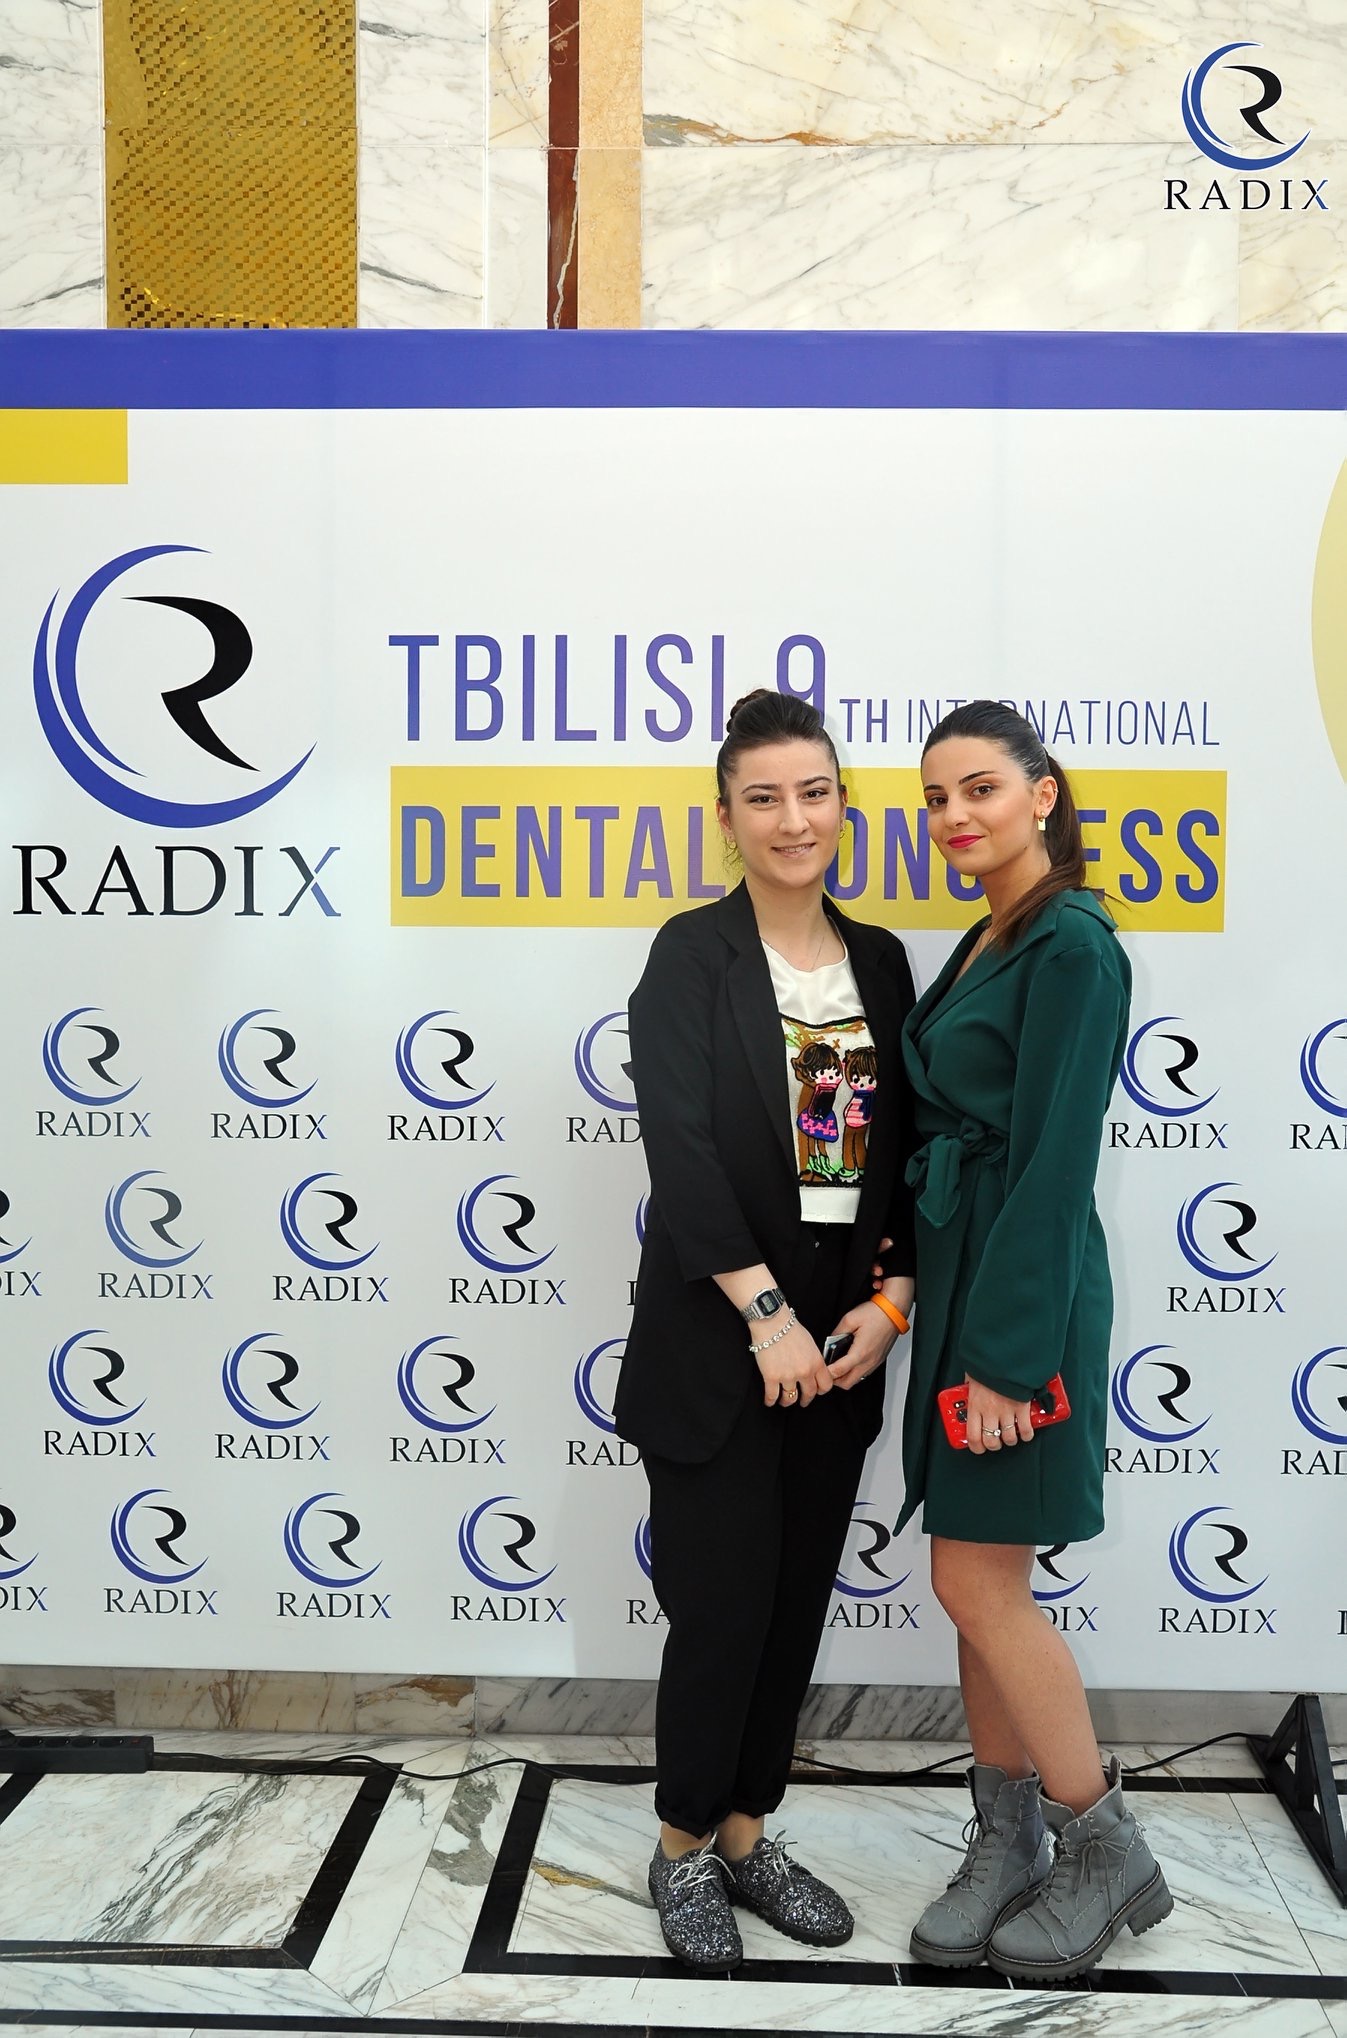 ჯანდაცვის ფაკულტეტის სტუდენტები და აკადემიური პერსონალი RADIX-ის თბილისის მე-9 საერთაშორისო სტომატოლოგიურ კონგრესზე